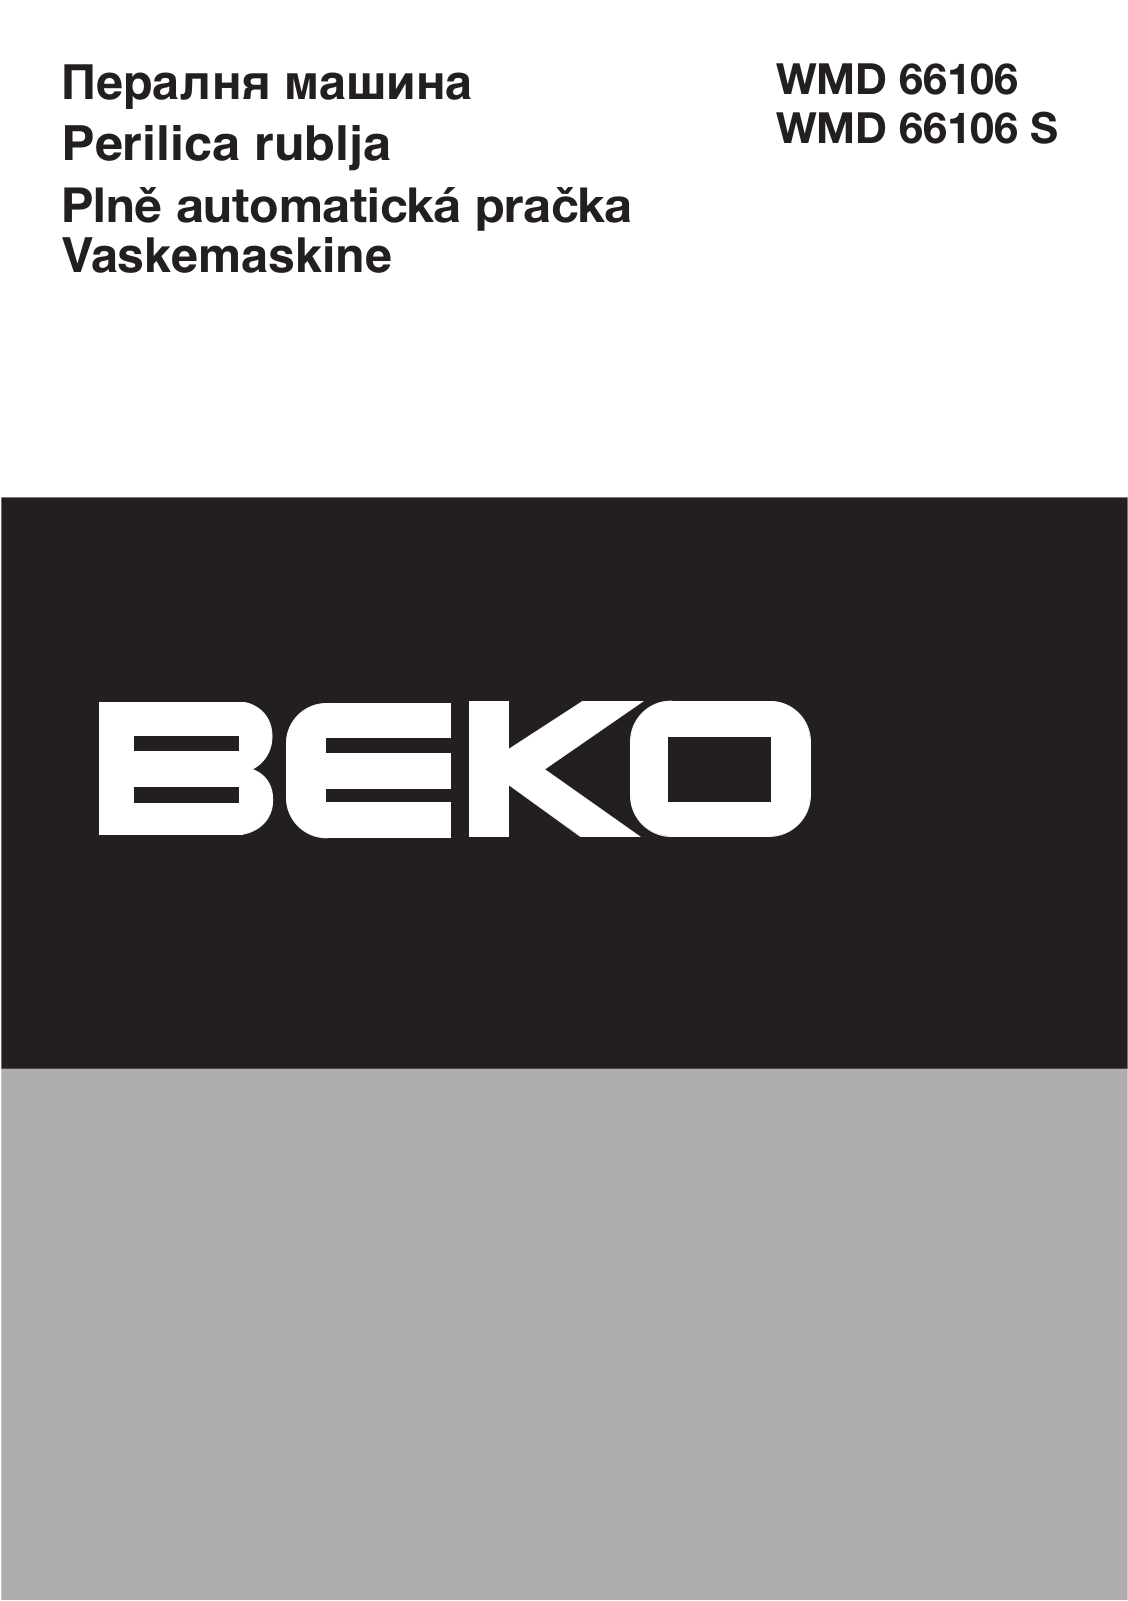 Beko WMD 66106 S, WMD 66106 Manual